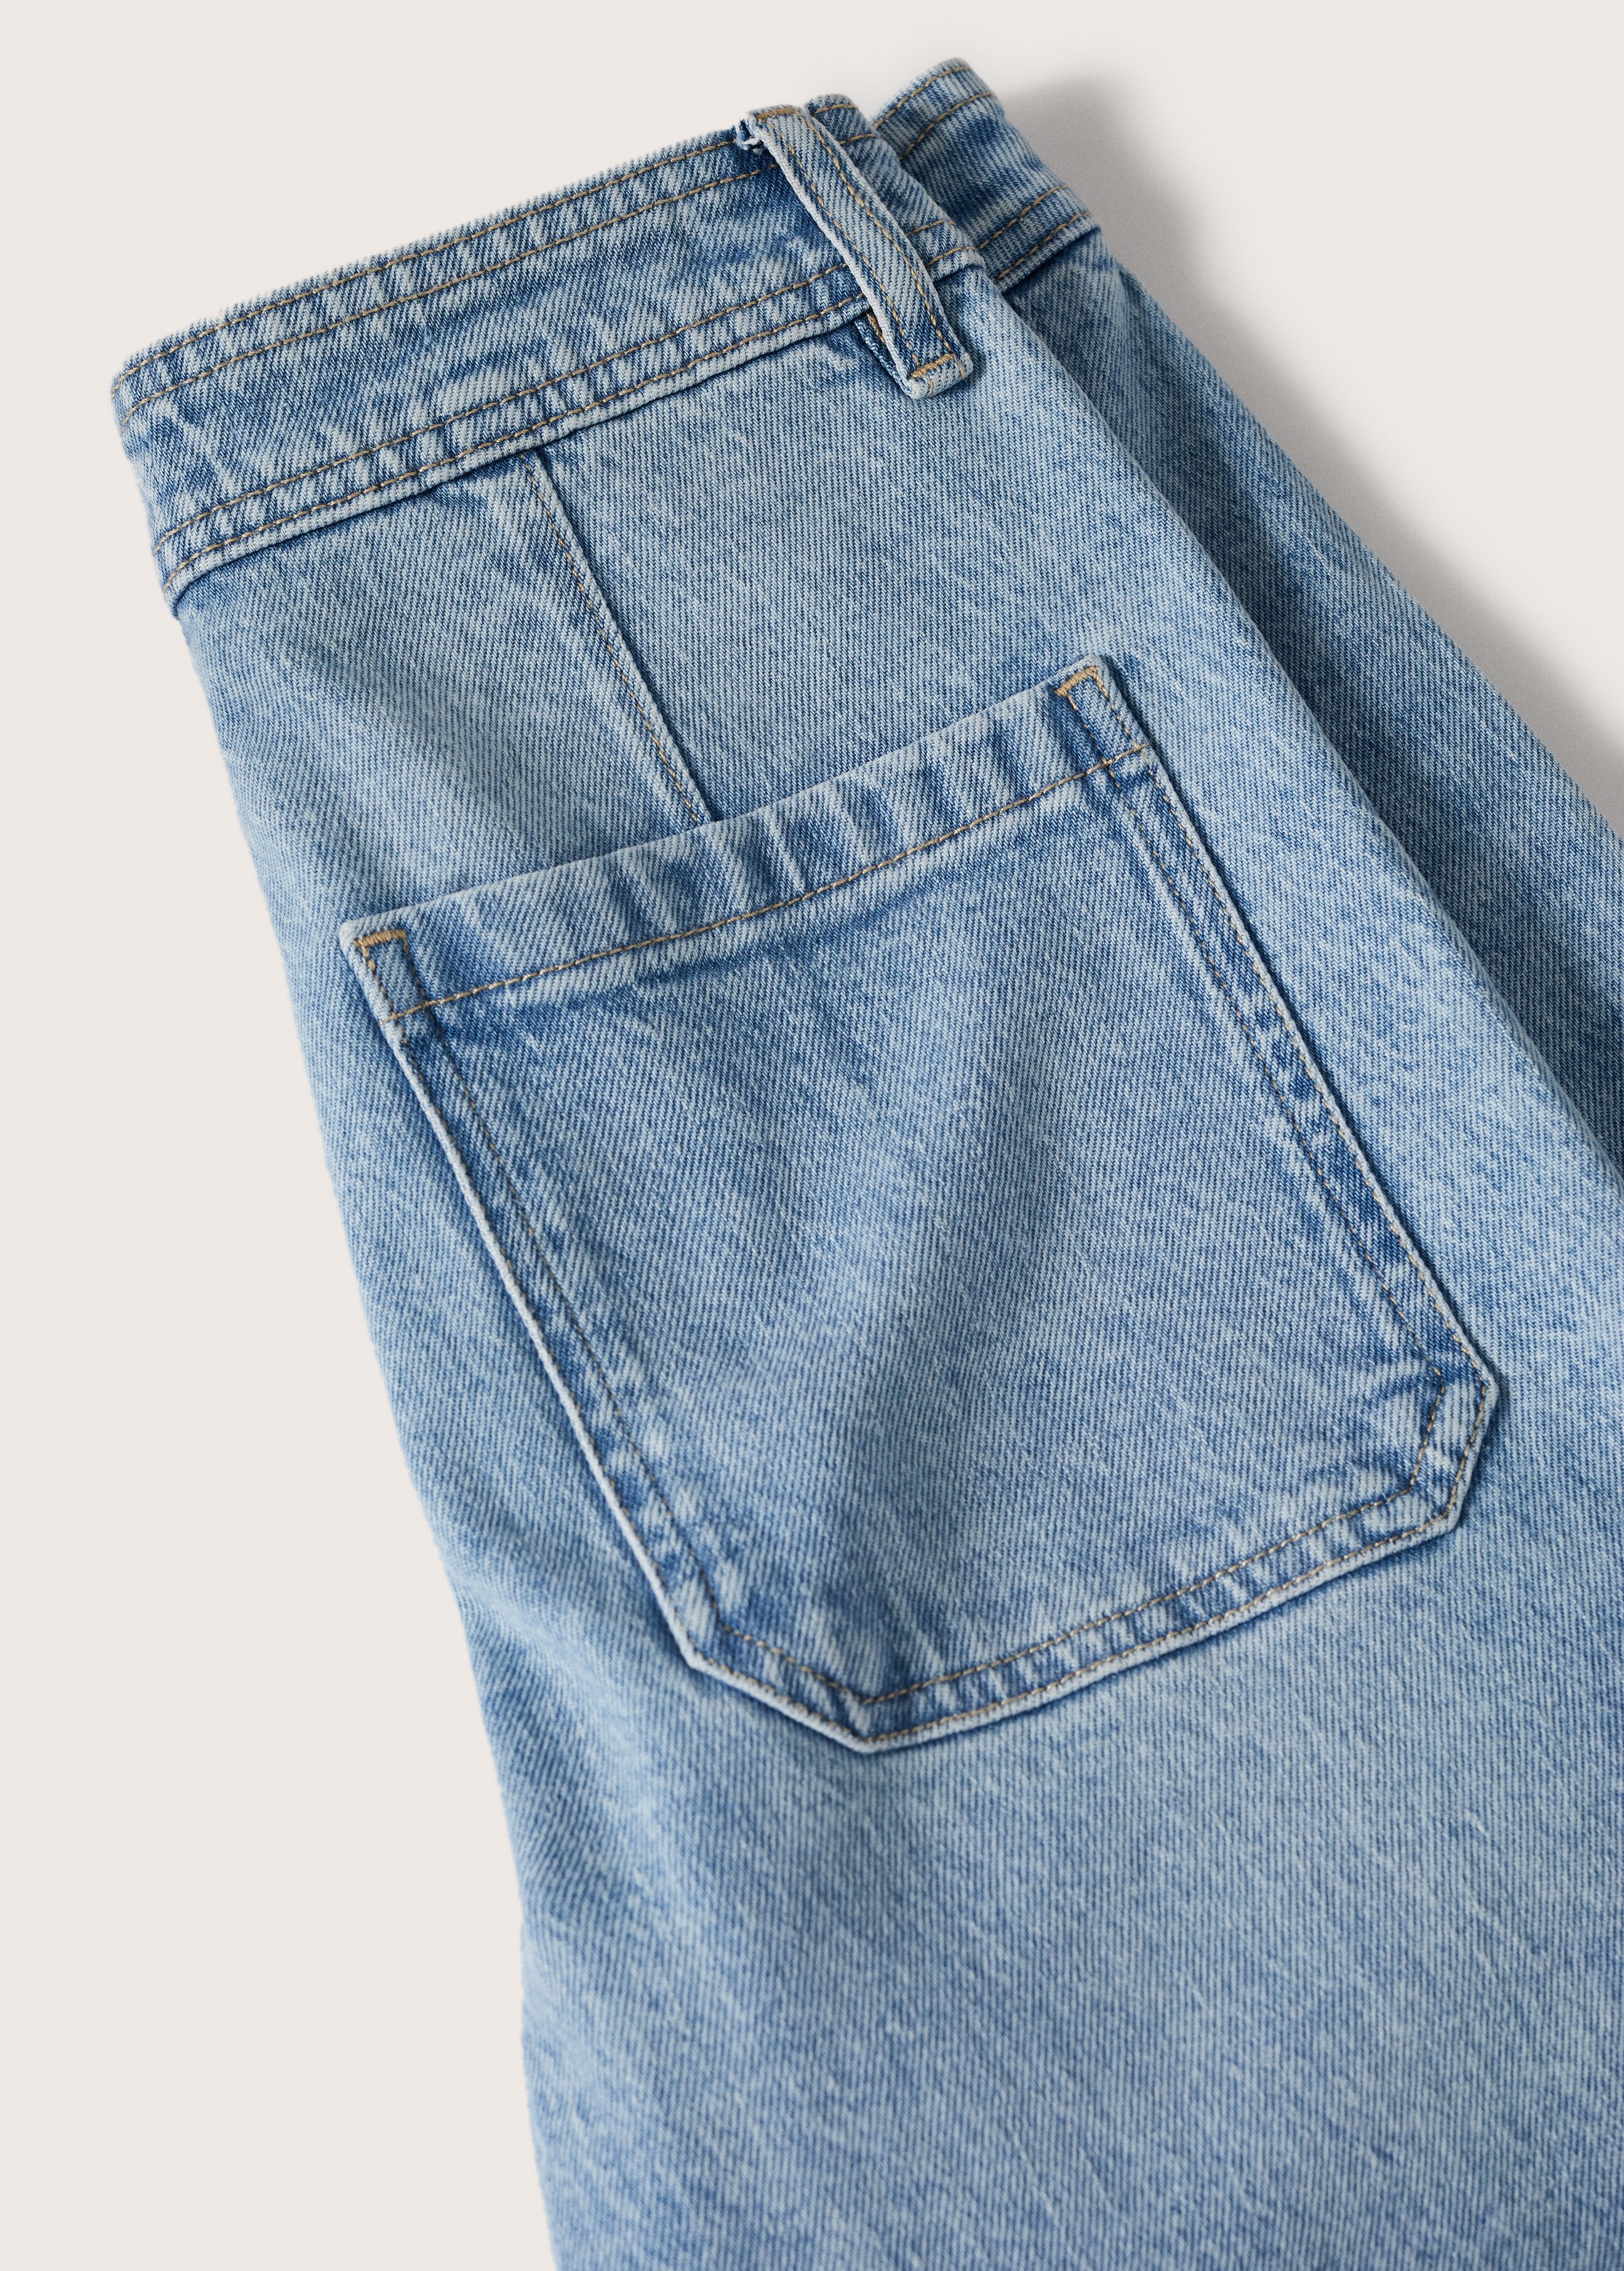 Jeans culotte tiro alto - Detalle del artículo 8